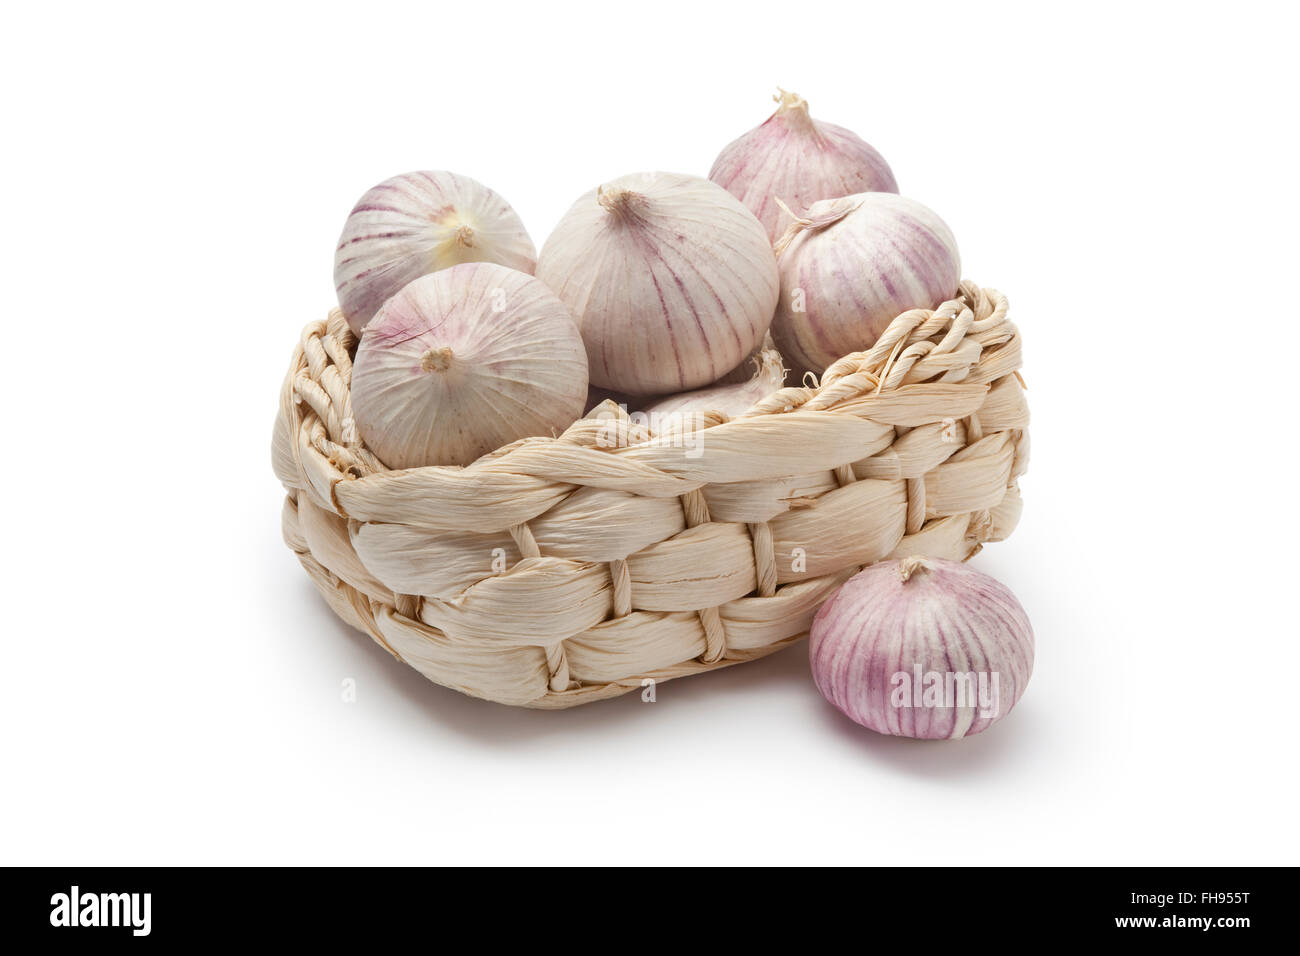 Basket with whole fresh single clove garlic on white background Stock Photo